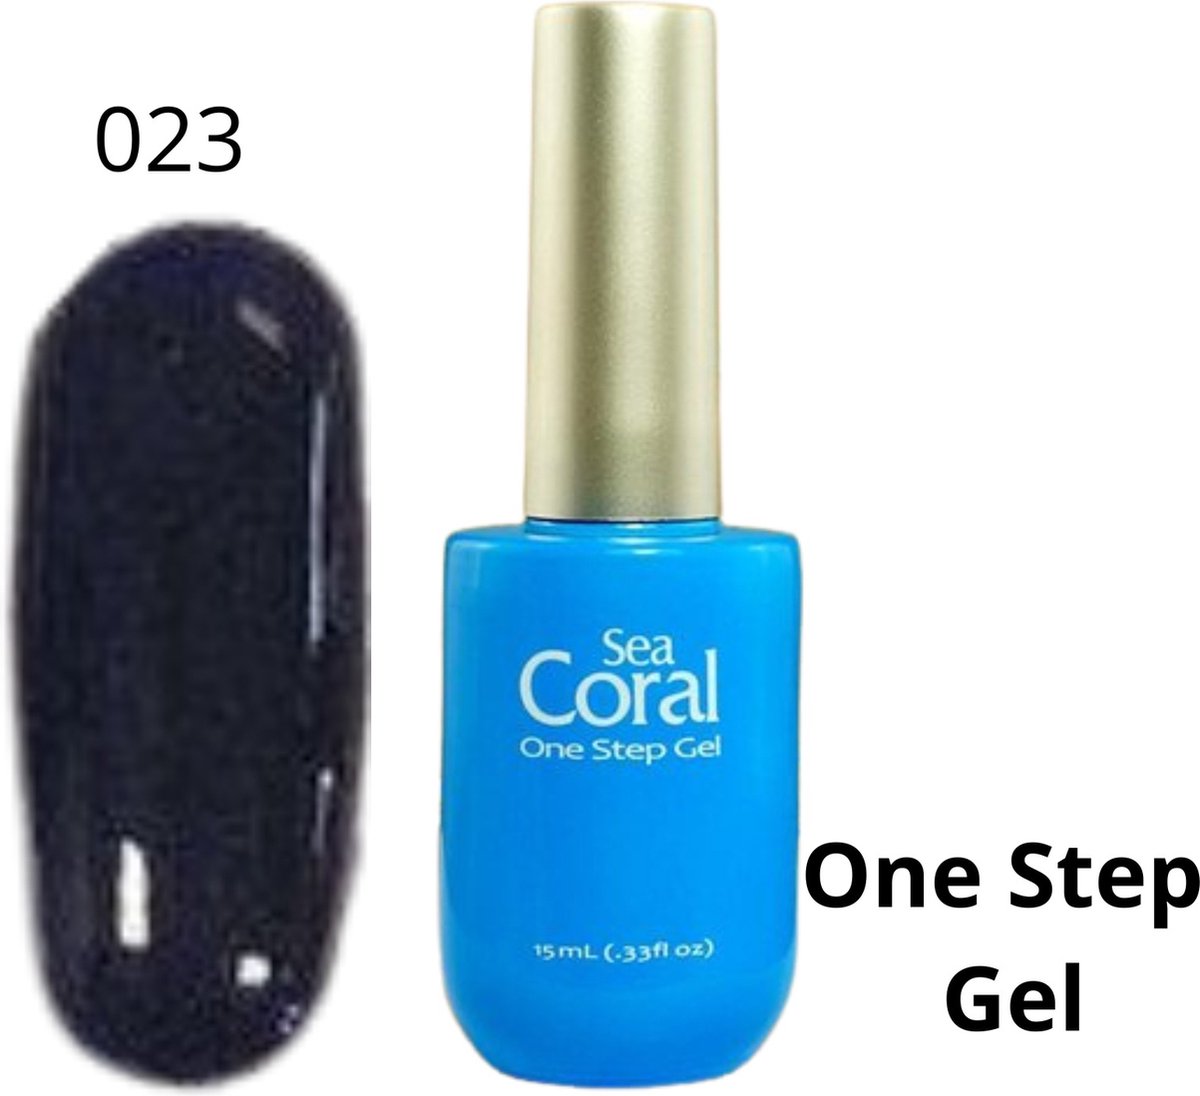 SeaCoral One Step No Wipe Gellak - Gel Nagellak - GelPolish – geen plaklaag - zónder kleeflaag, geschikt voor UV en LED – Donkerblauw 023